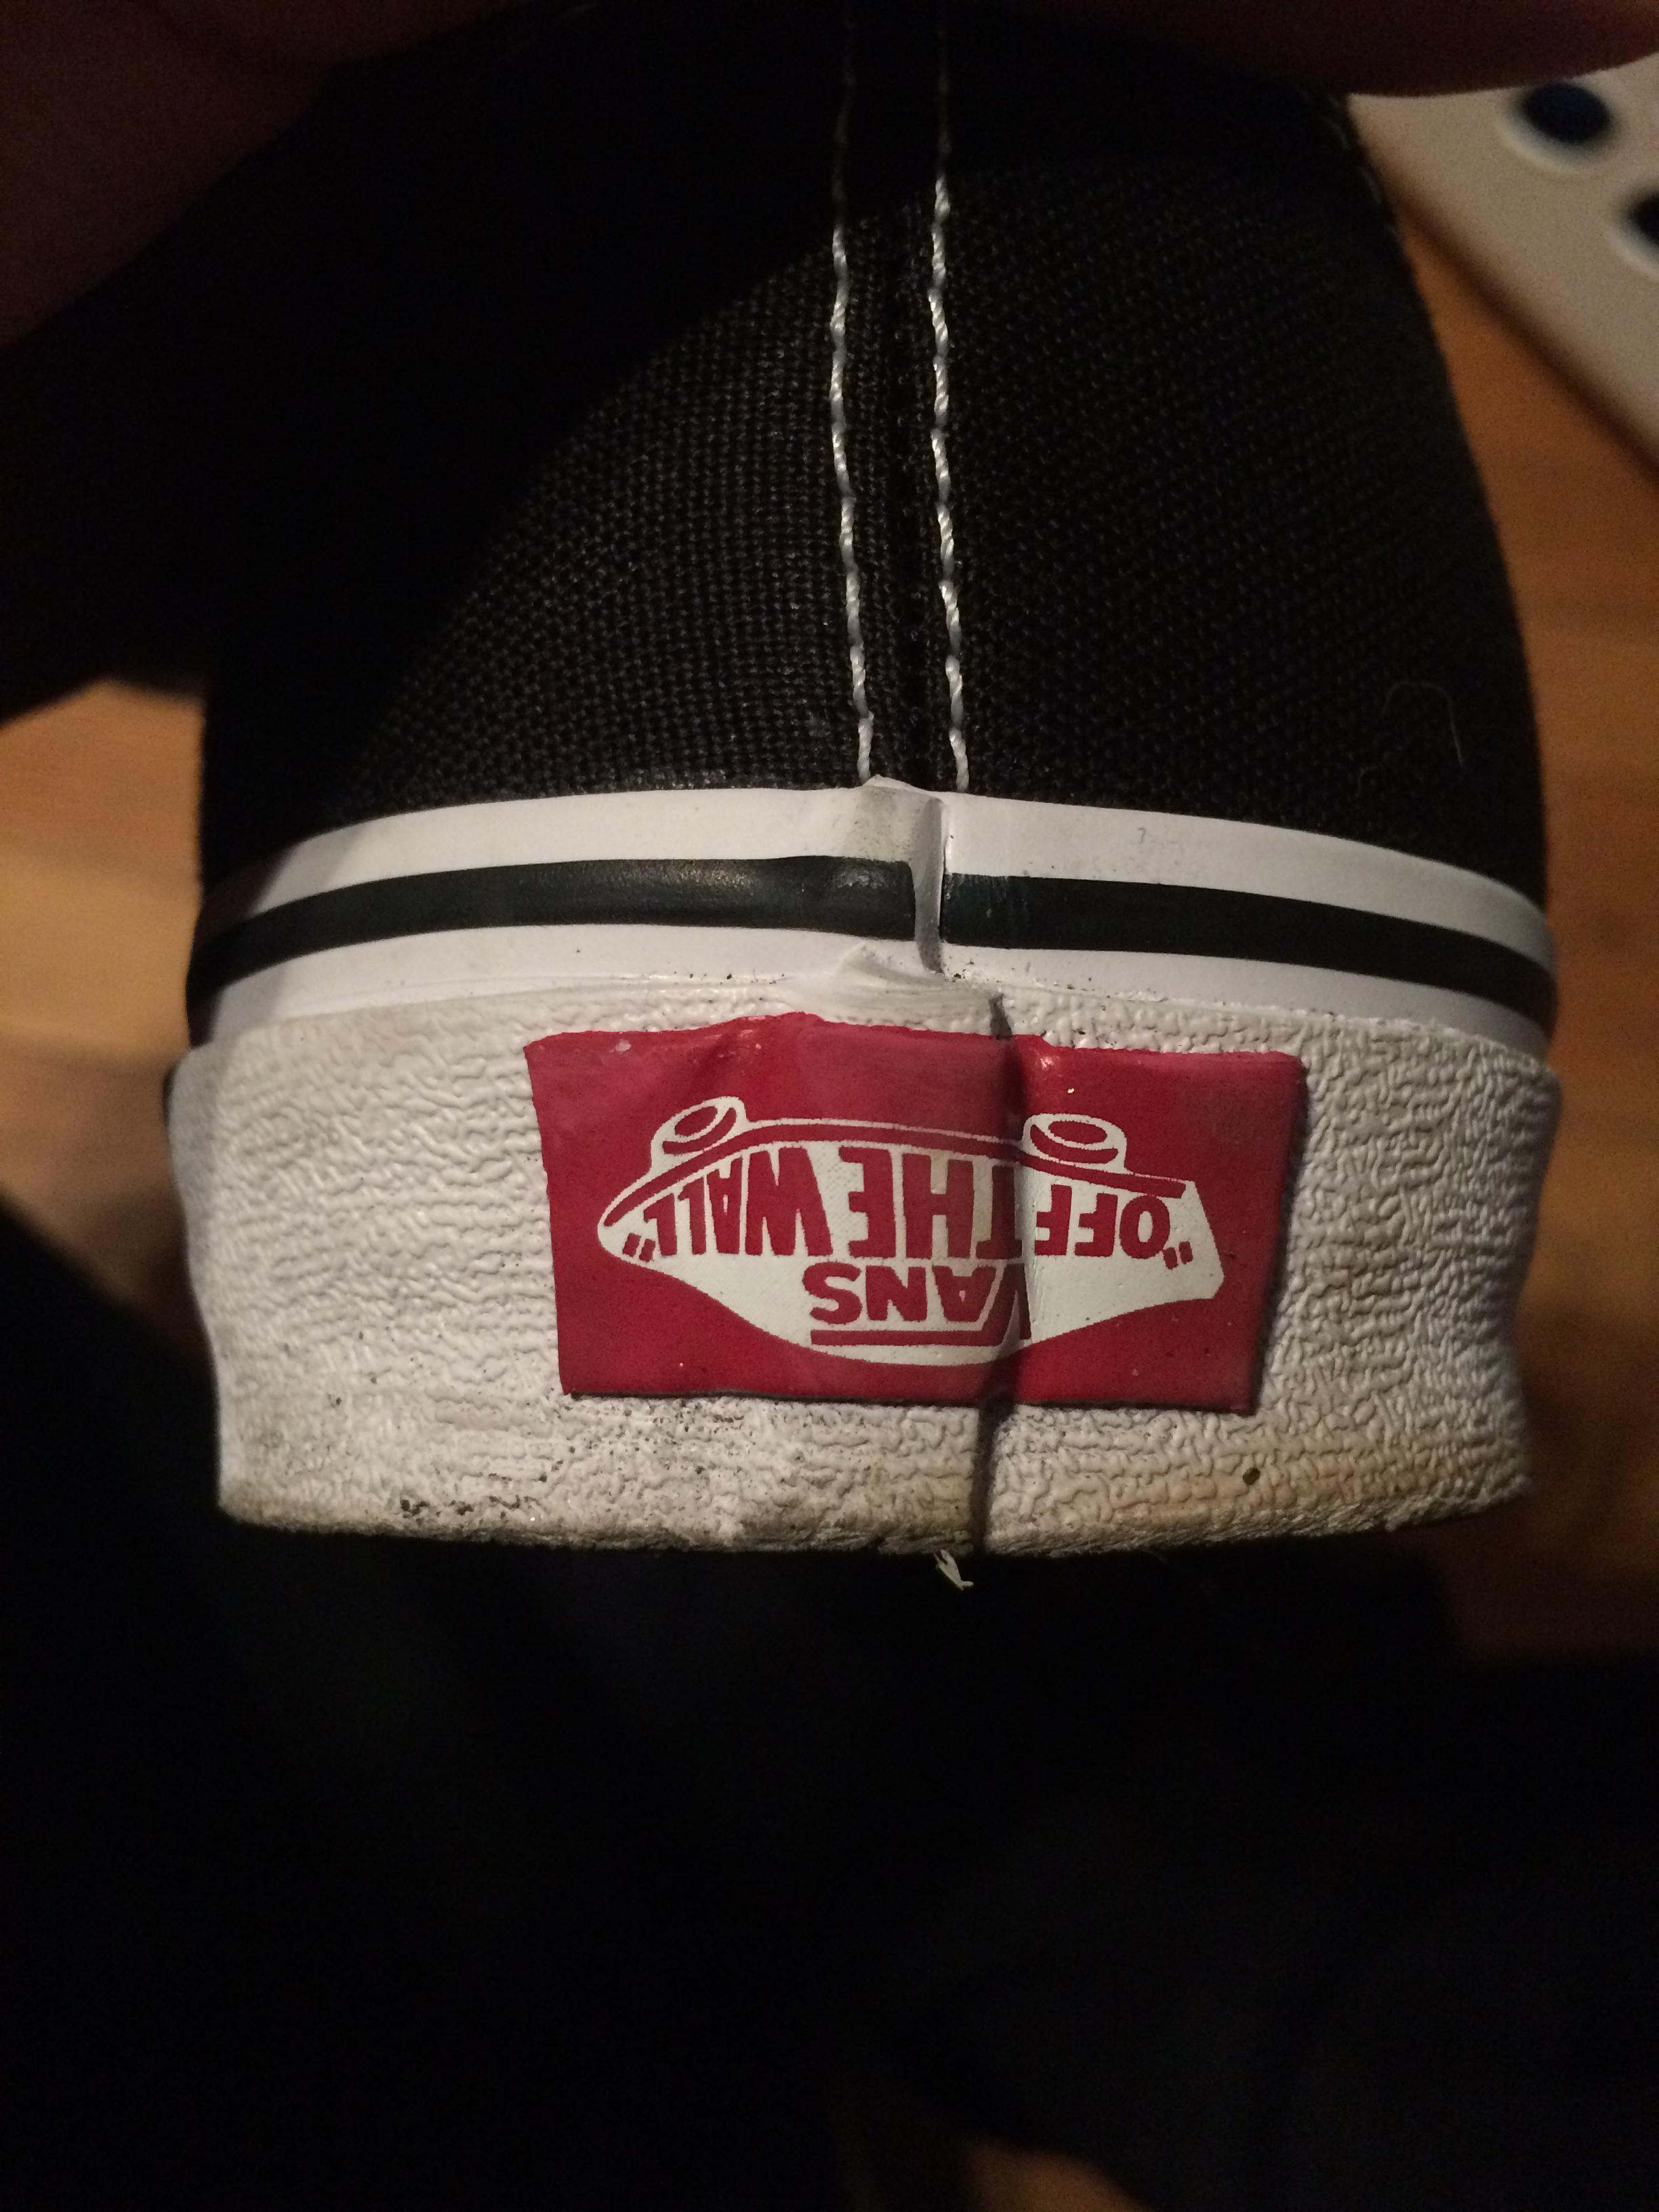 Vans Red Logo - The Vans logo on my shoe is upside down : mildlyinteresting